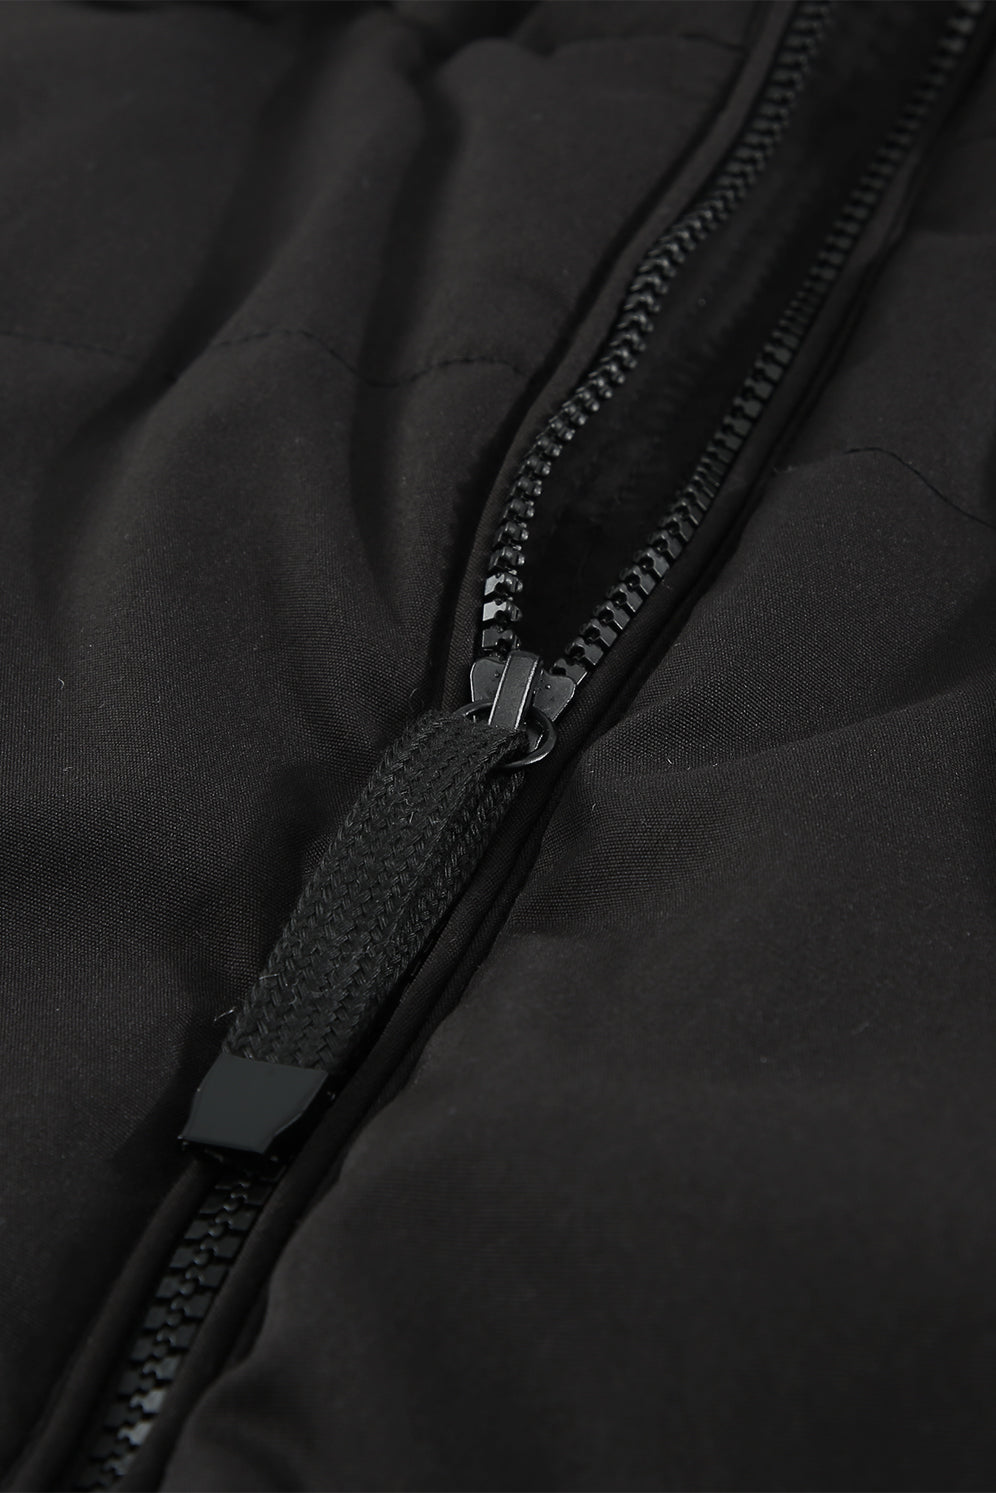 LC856045-2-S, LC856045-2-M, LC856045-2-L, LC856045-2-XL, LC856045-2-2XL, Black Winter Coats for Women Outdoor Zipper Hooded Coat Outwear with Pockets